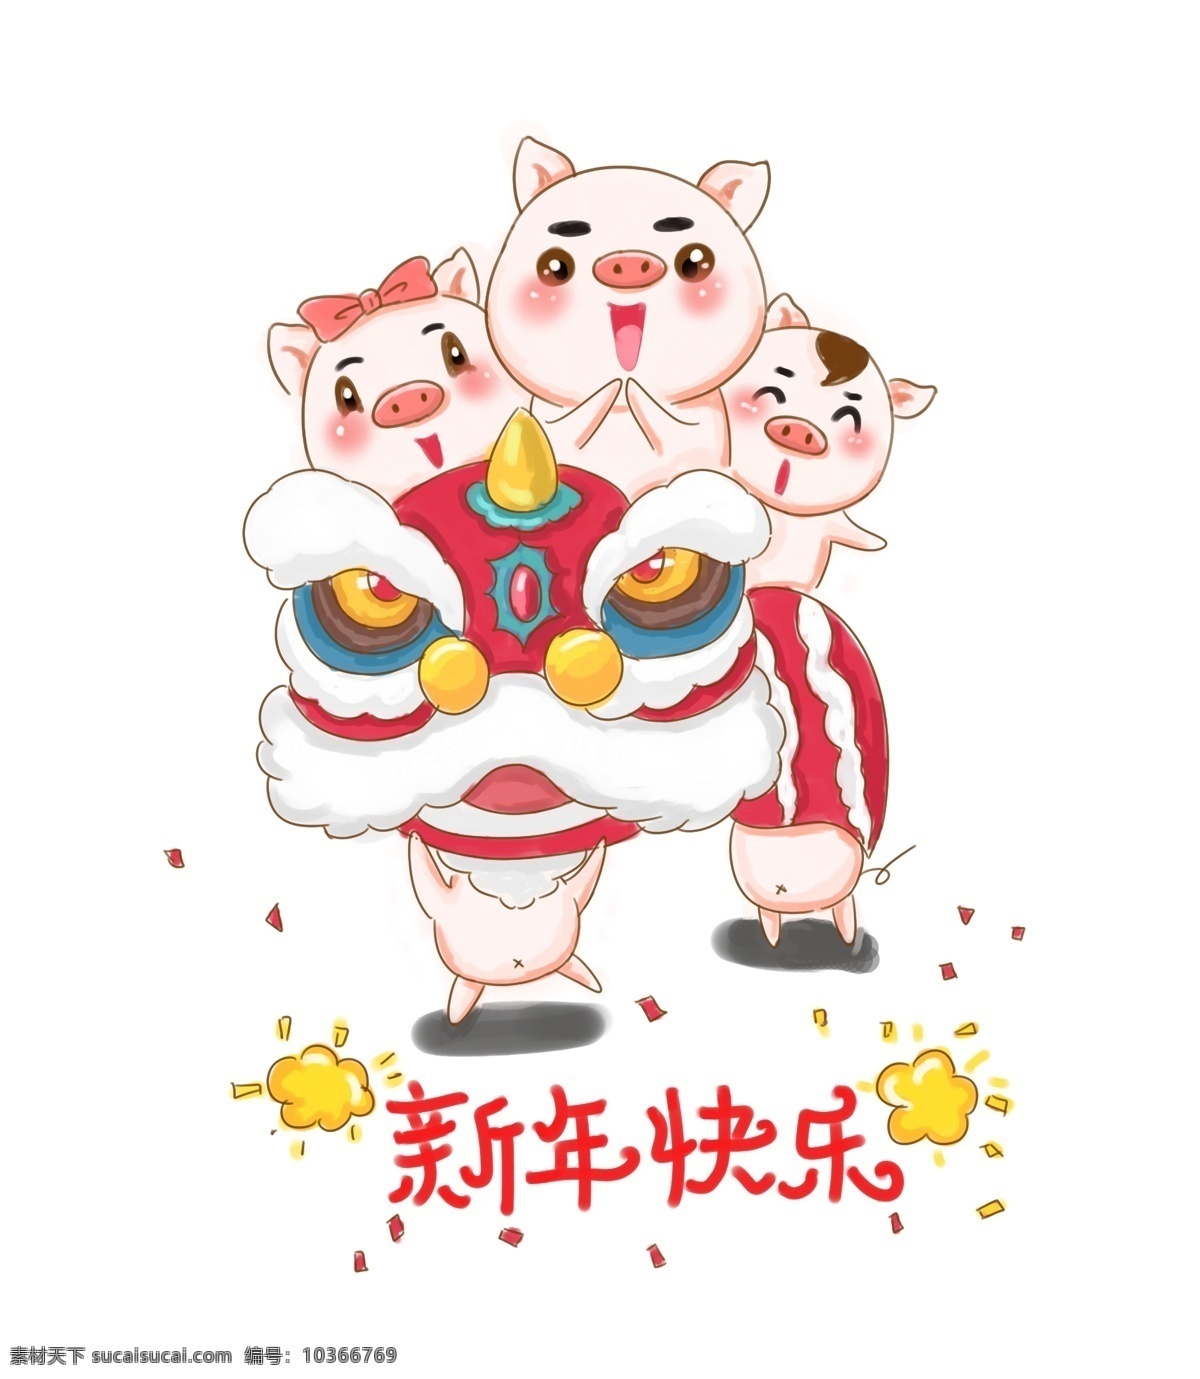 舞 狮子 小 猪 卡通 插画 可爱 传统 节日 舞狮子 小猪 狮头 鞭炮 过年 新年 开心 热闹 欢乐 新年快乐